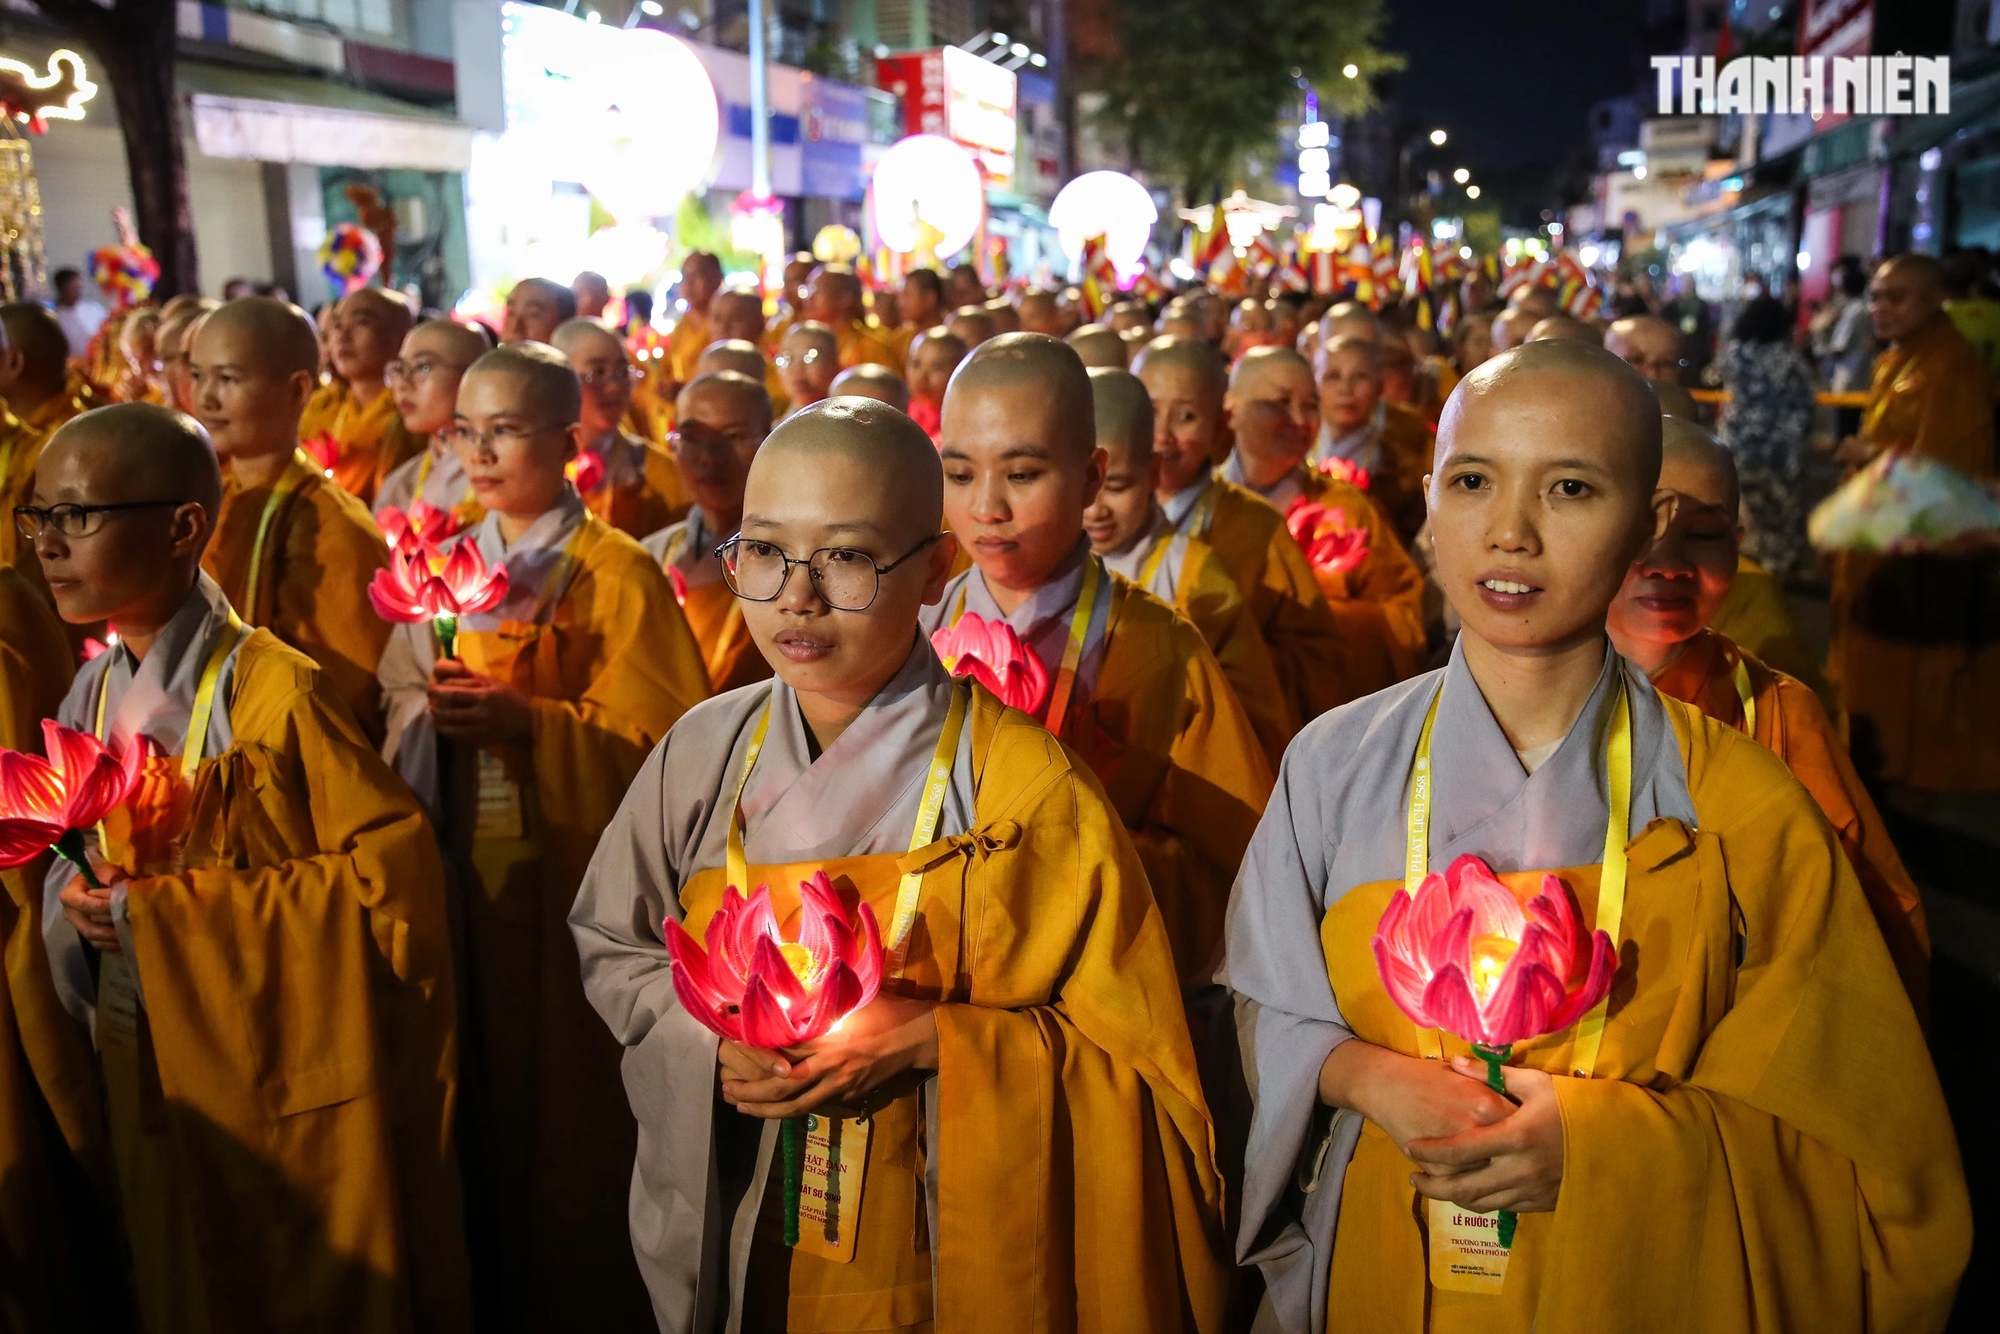 Lễ rước kiệu hoa kính mừng Phật đản Phật lịch 2568 là hoạt động mở đầu cho Tuần lễ kính mừng Đại lễ Phật đản năm nay tại TP.HCM